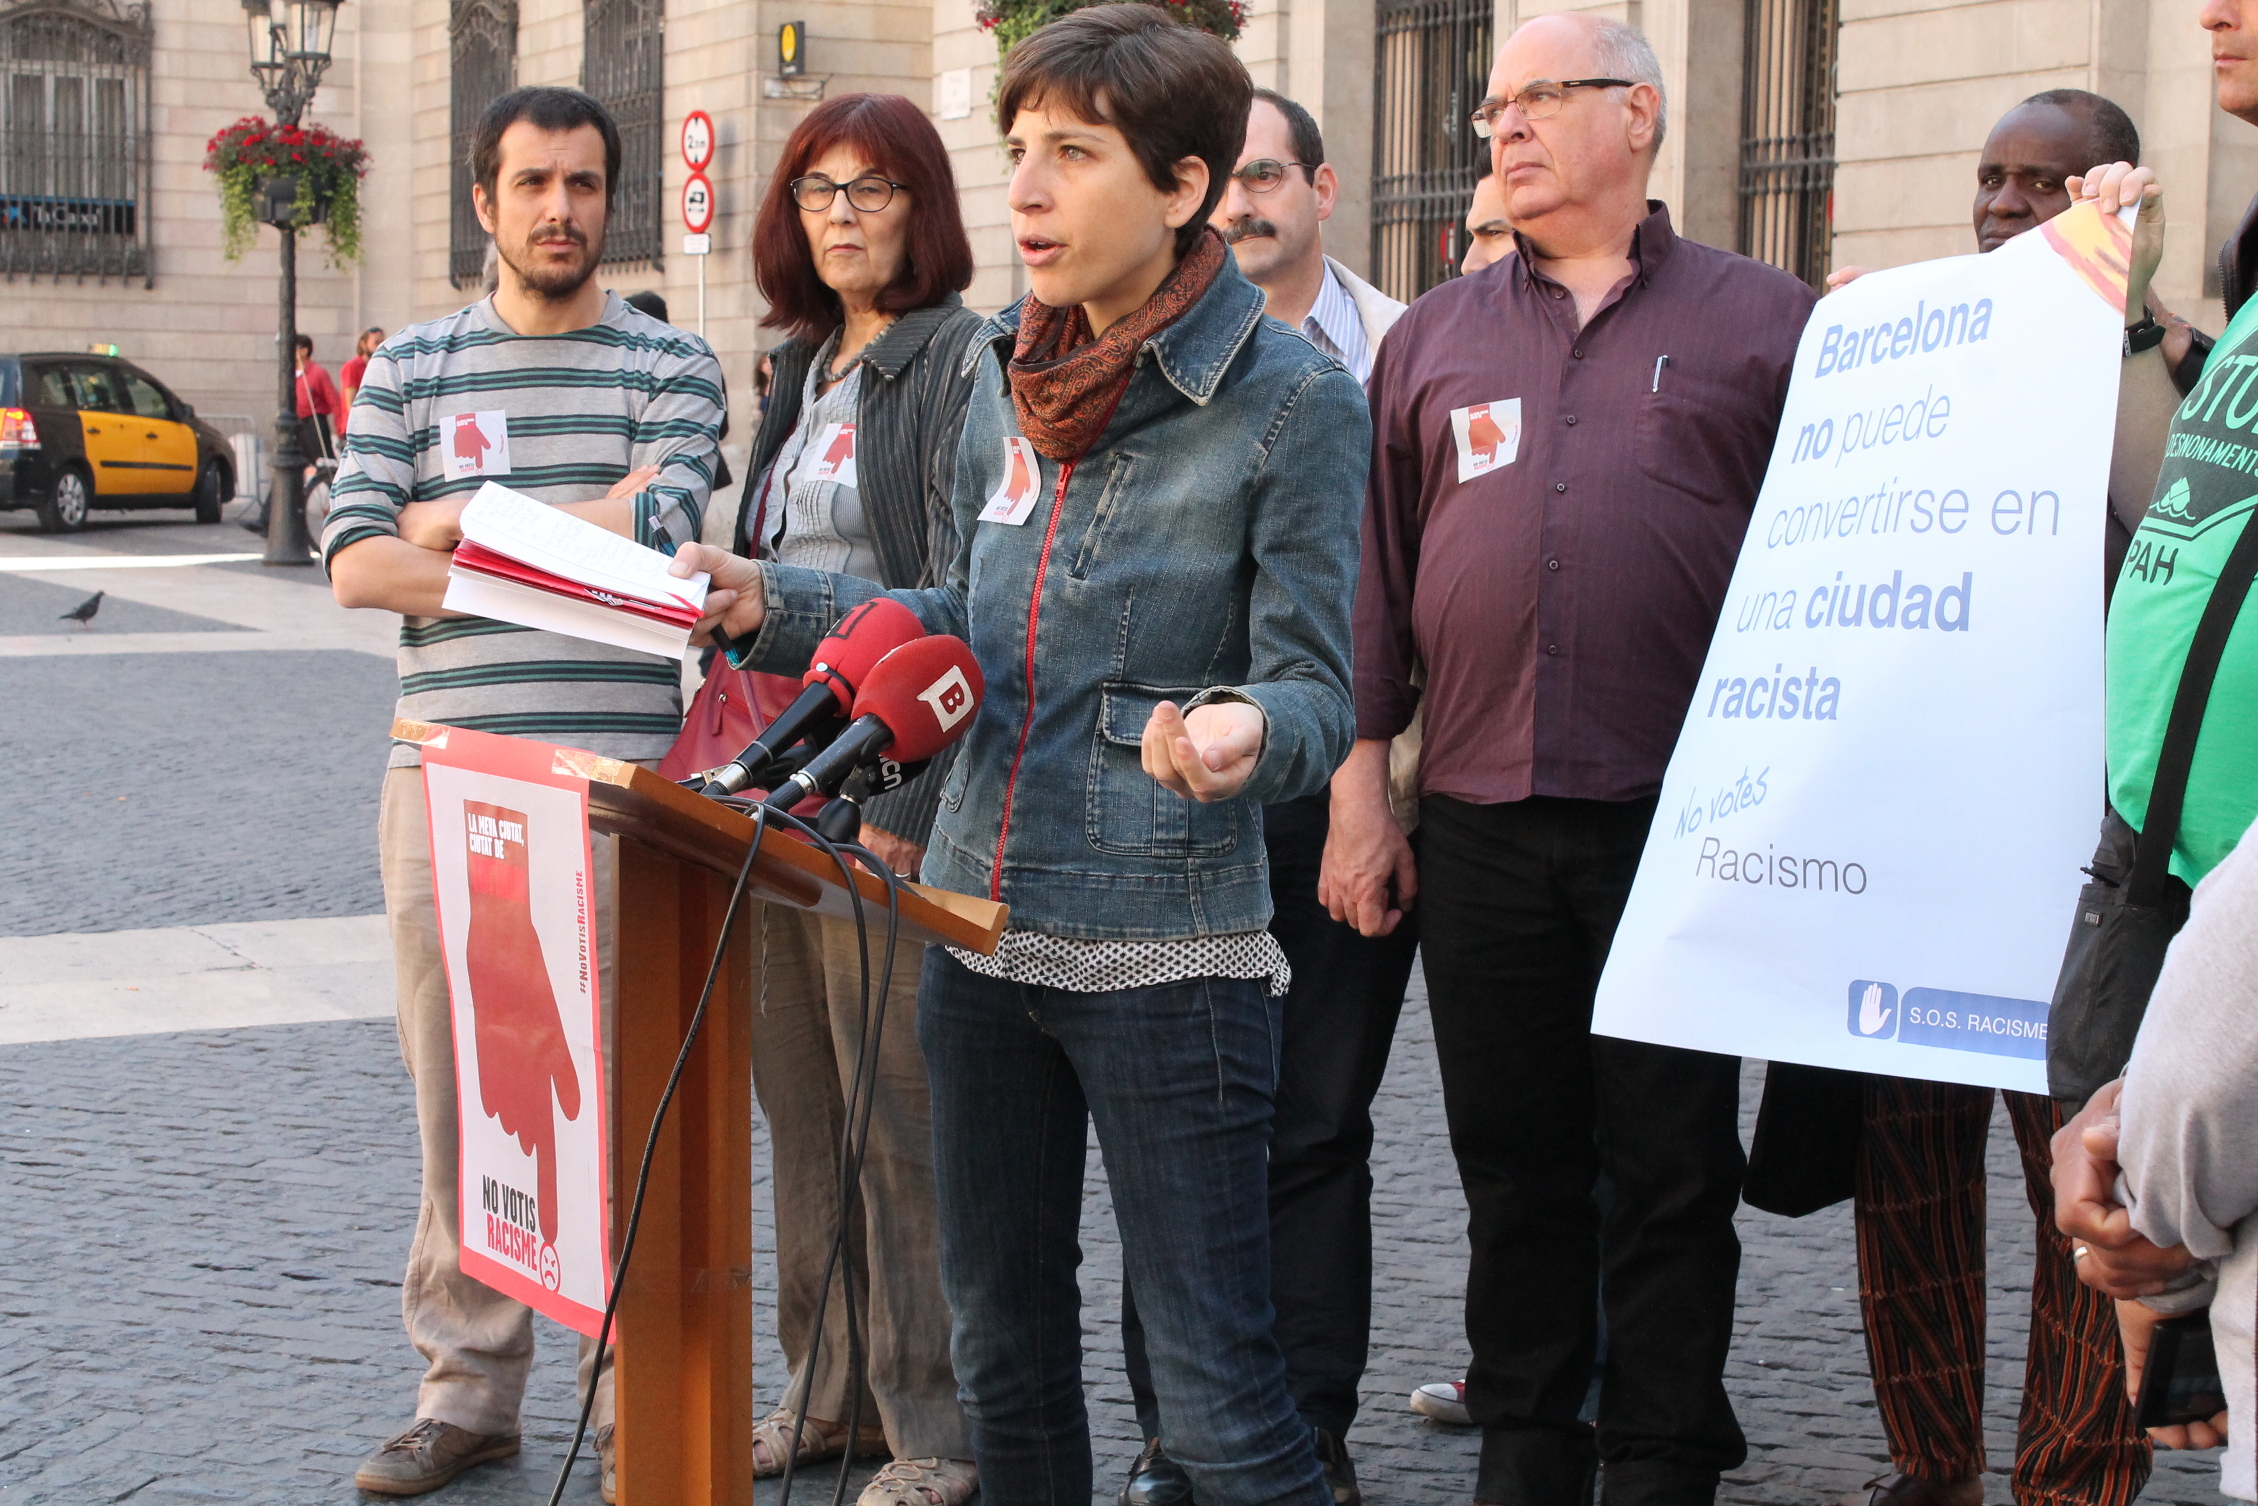 La sociedad civil organizada rechaza contundentemente el racismo y la xenofobia del Partido Popular de Catalunya